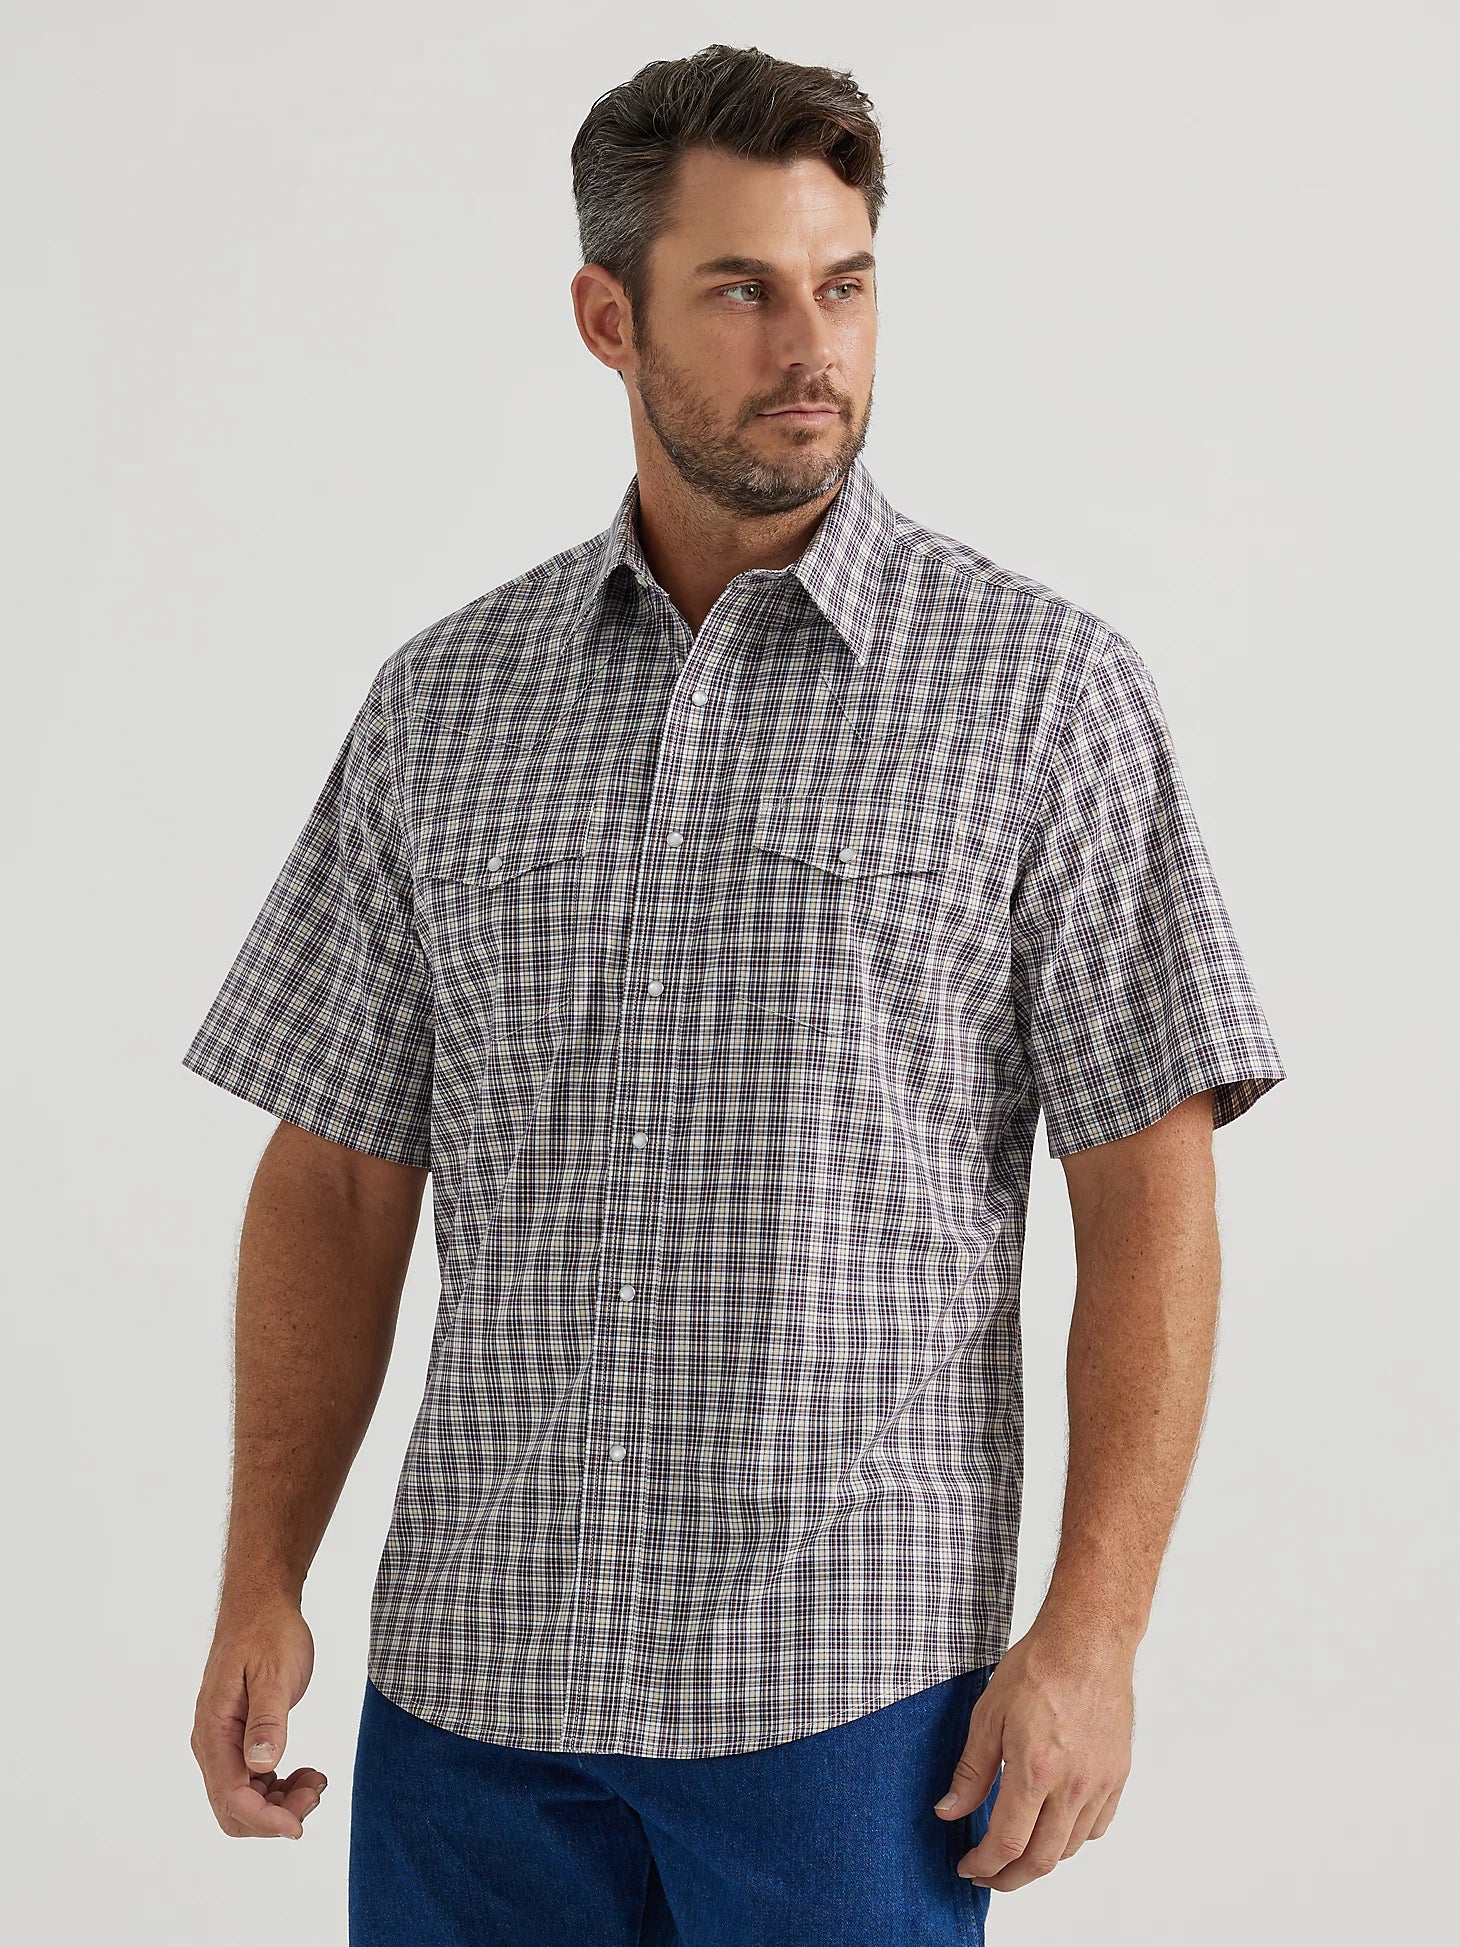 Wrangler Men's Wrinkle Resist Plum Plaid Shirt